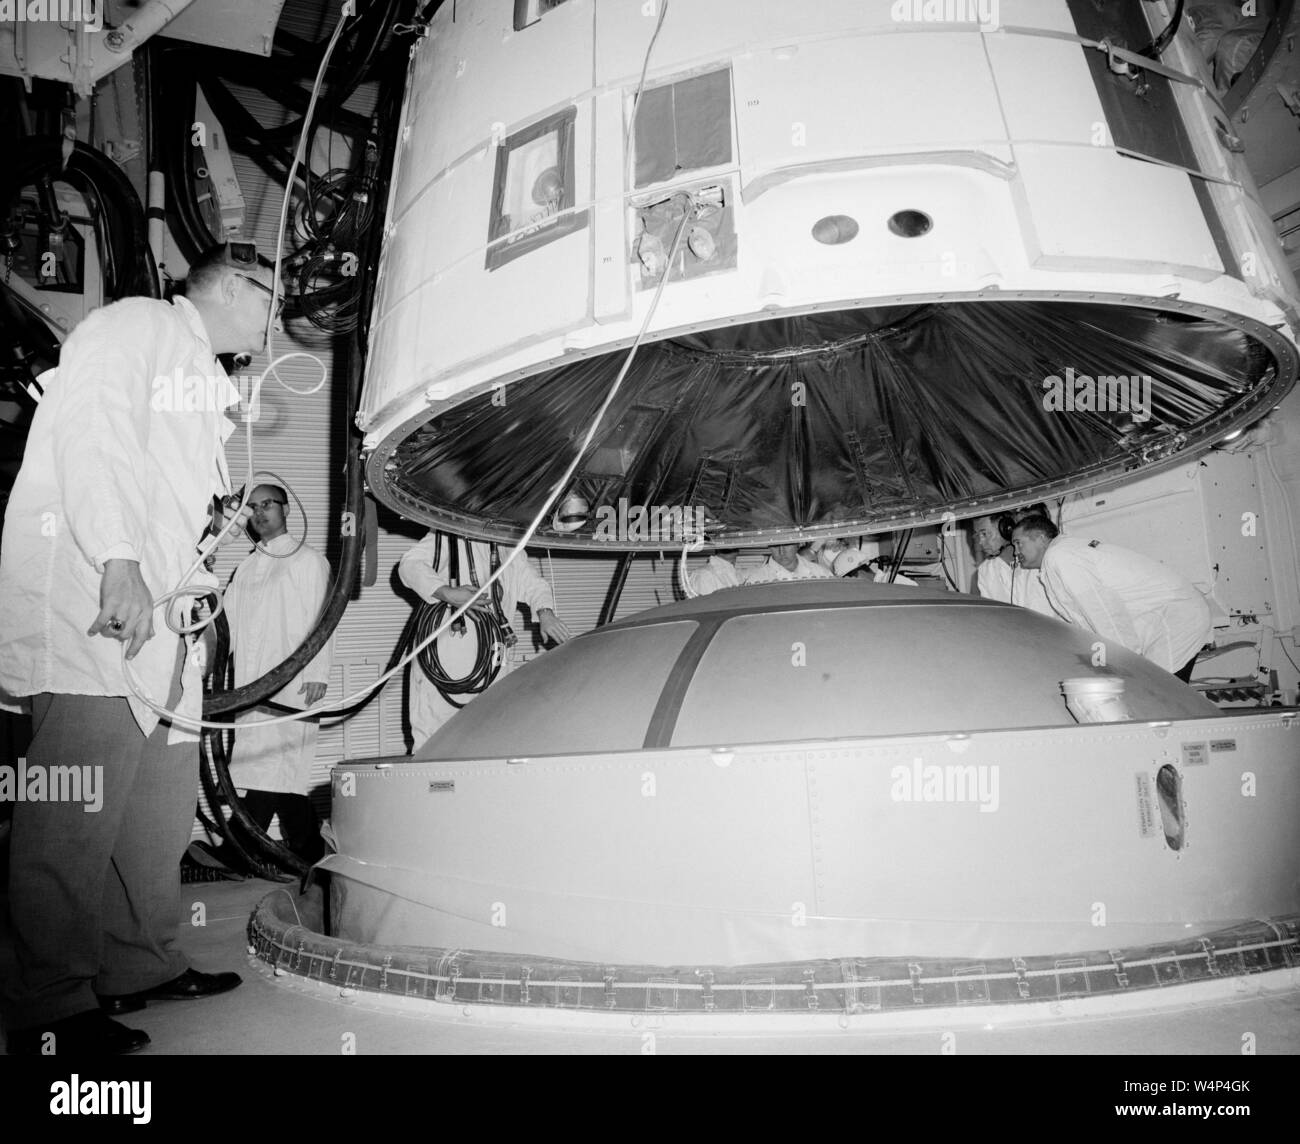 Gli ingegneri della NASA mate Gemini III veicolo spaziale con il Titan II veicolo di lancio nella sala bianca del pad 19 presso il Kennedy Space Center, Merritt Island, Florida, febbraio 1965. Immagine cortesia Nazionale Aeronautica e Spaziale Administration (NASA). () Foto Stock